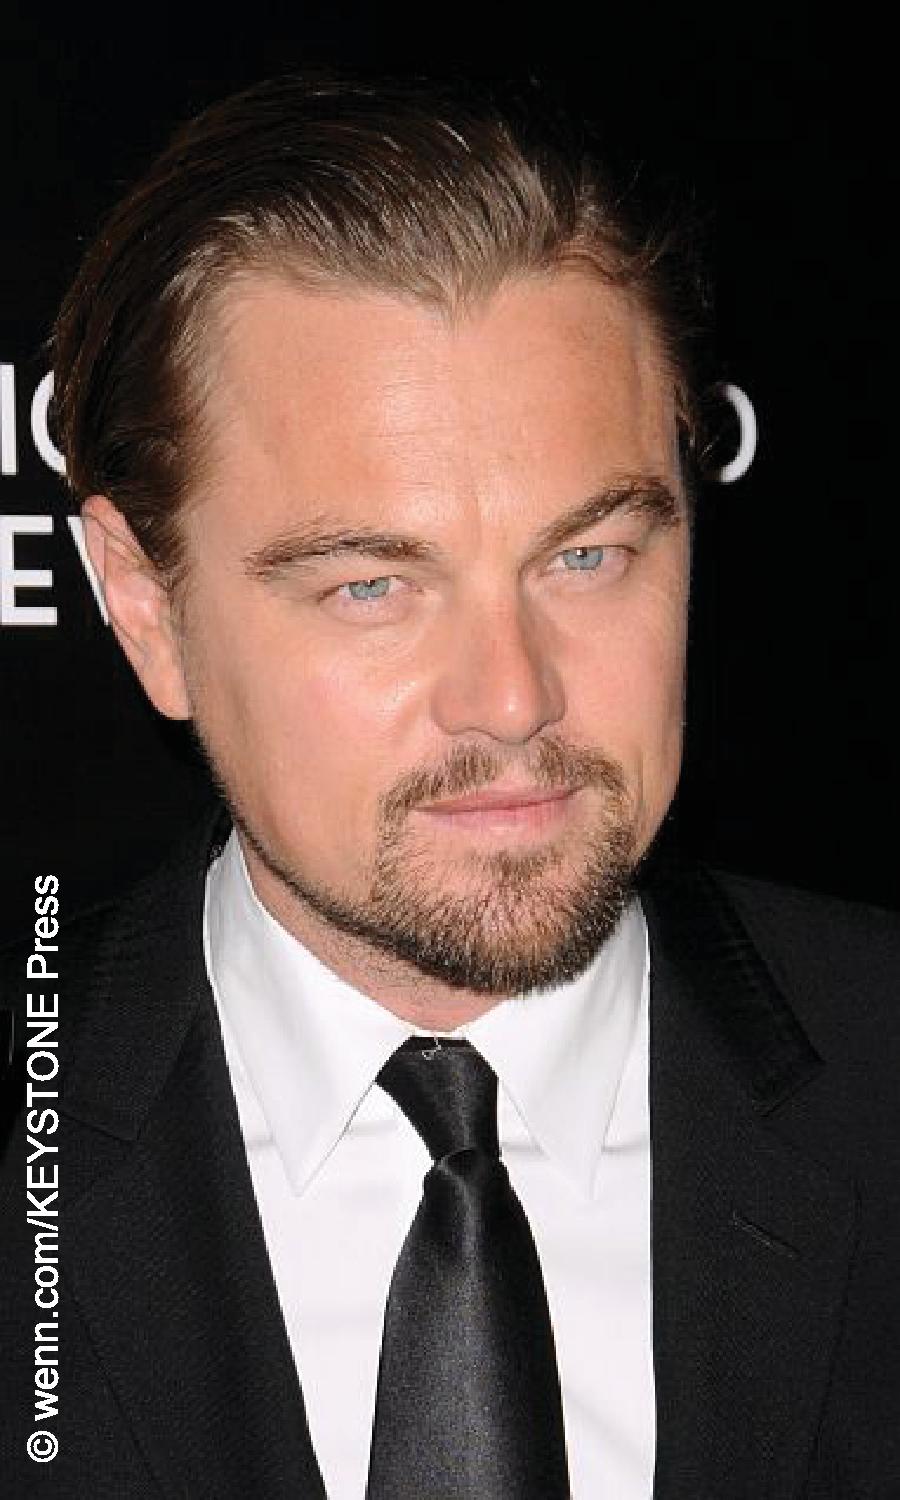 Actor Leonardo DiCaprio